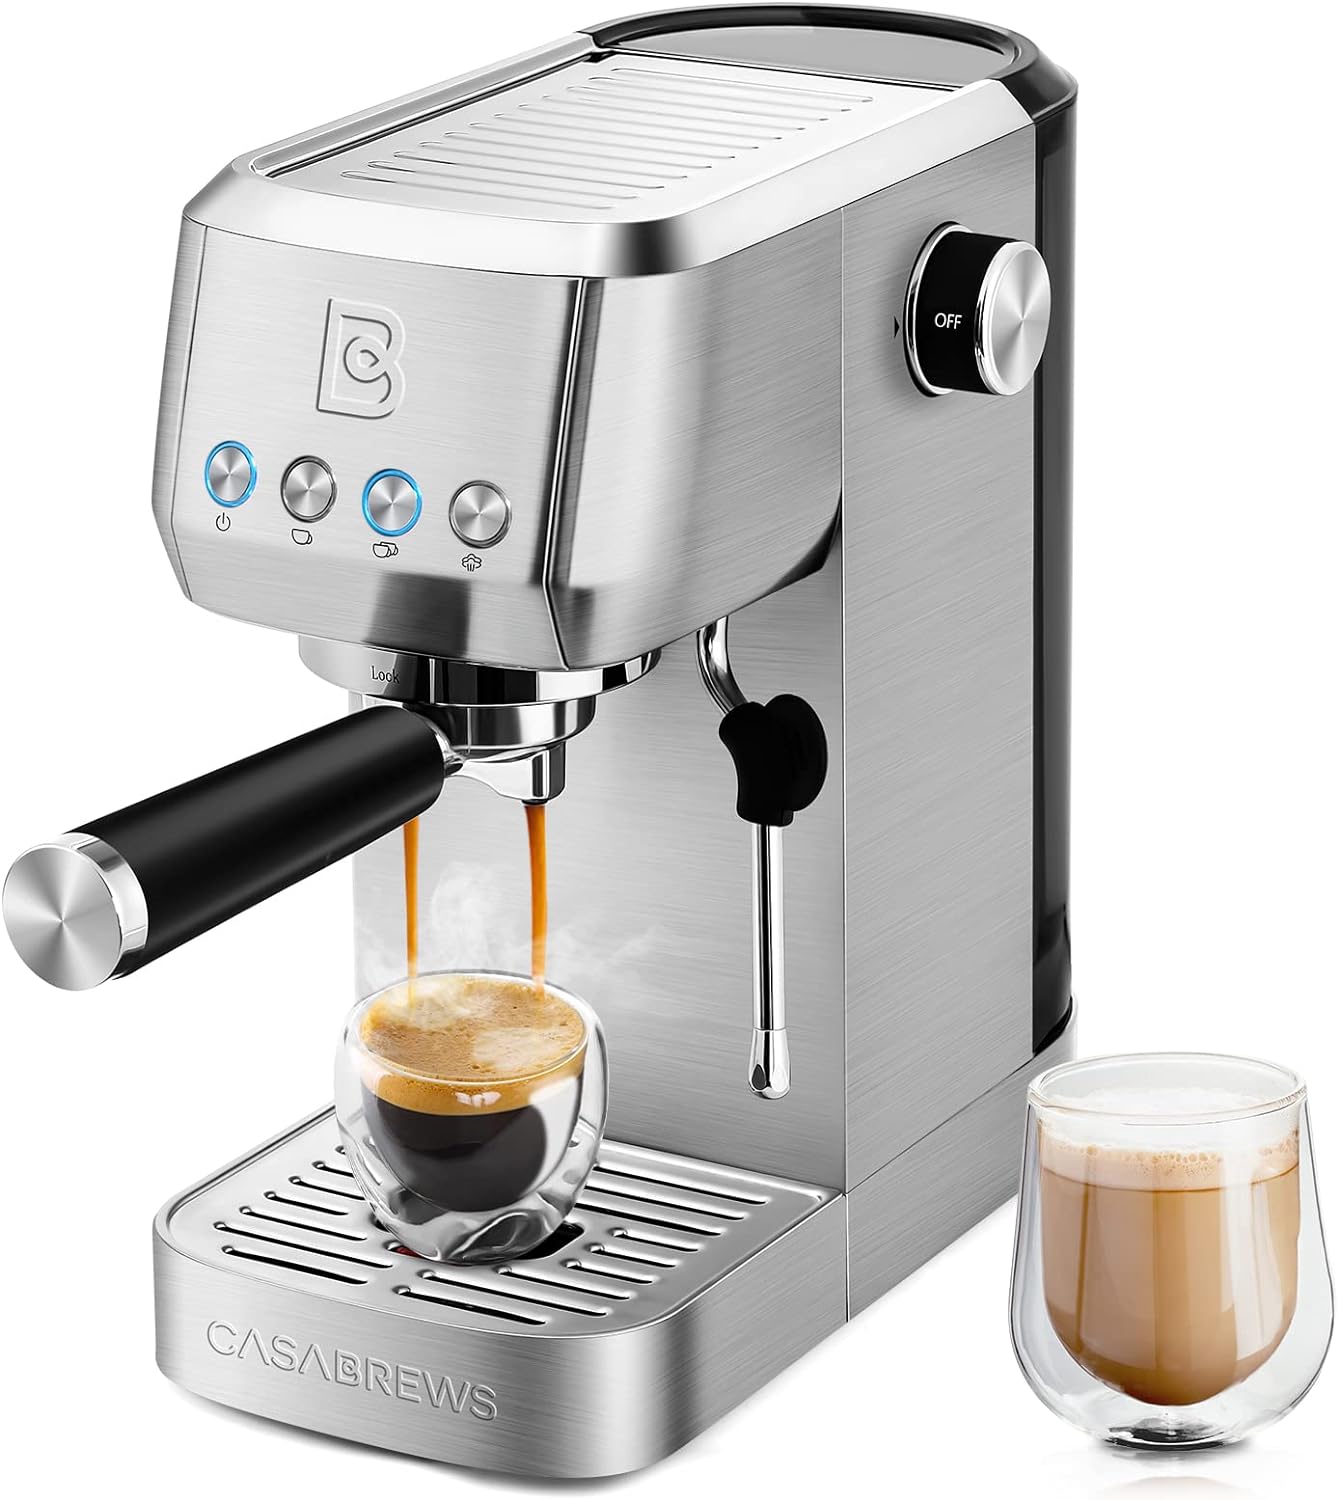 Professional Espresso Maker Cappuccino Machine Review